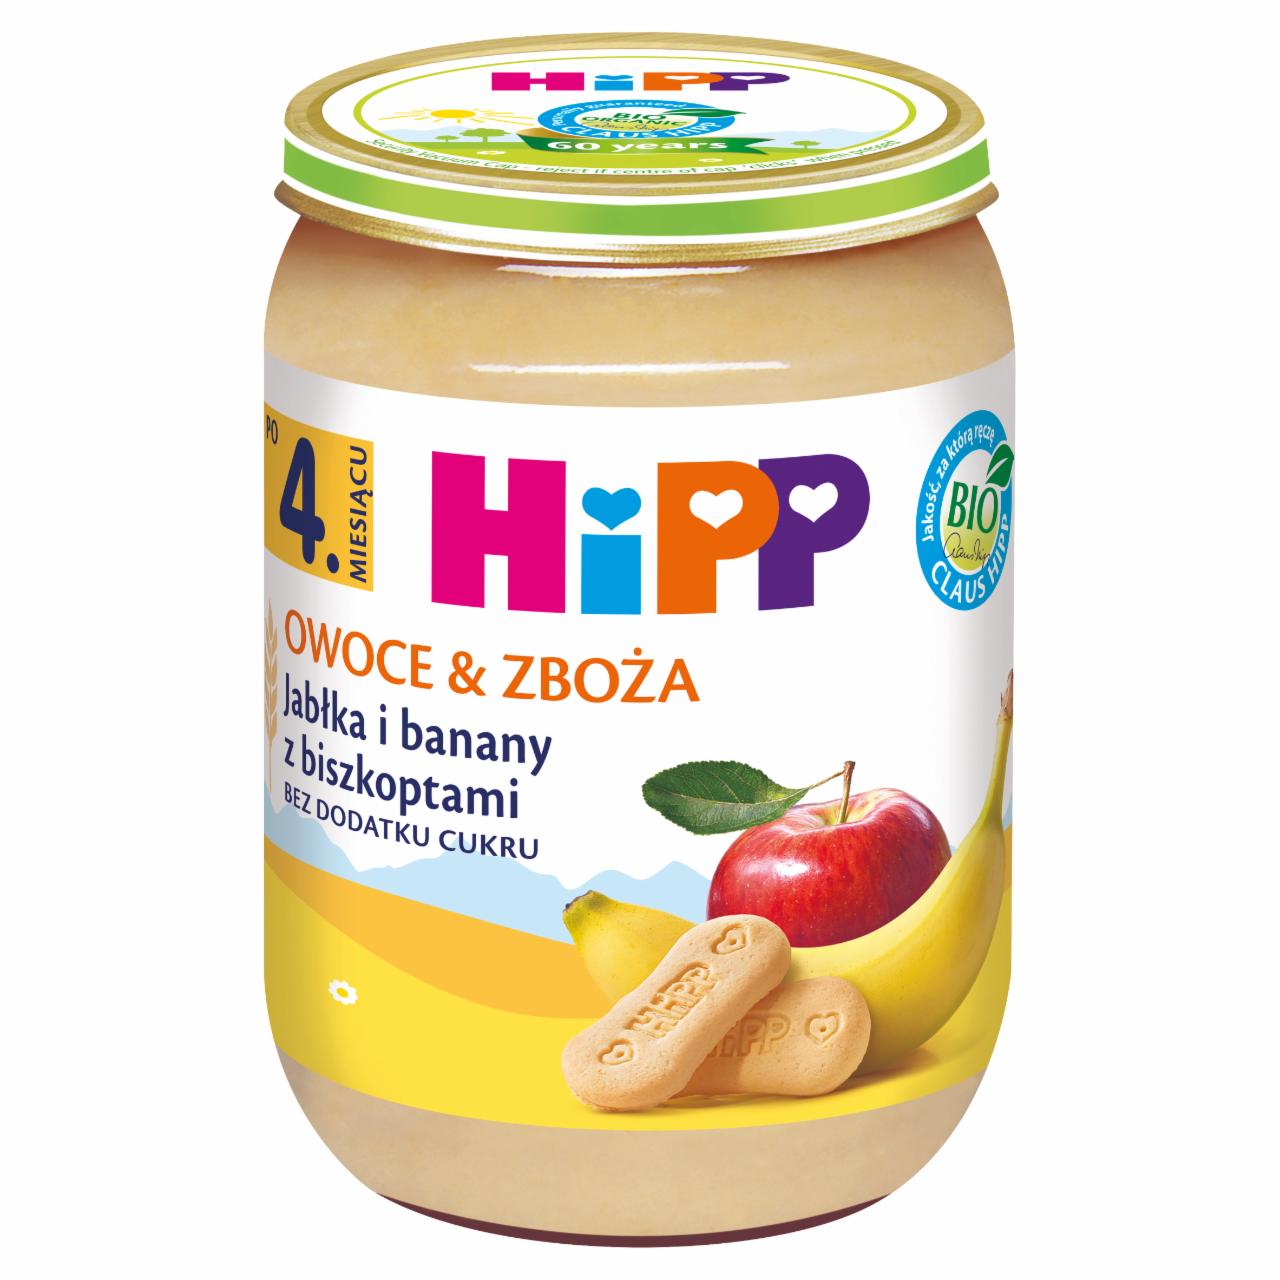 Zdjęcia - HiPP BIO Owoce & Zboża Jabłka i banany z biszkoptami po 4. miesiącu 190 g